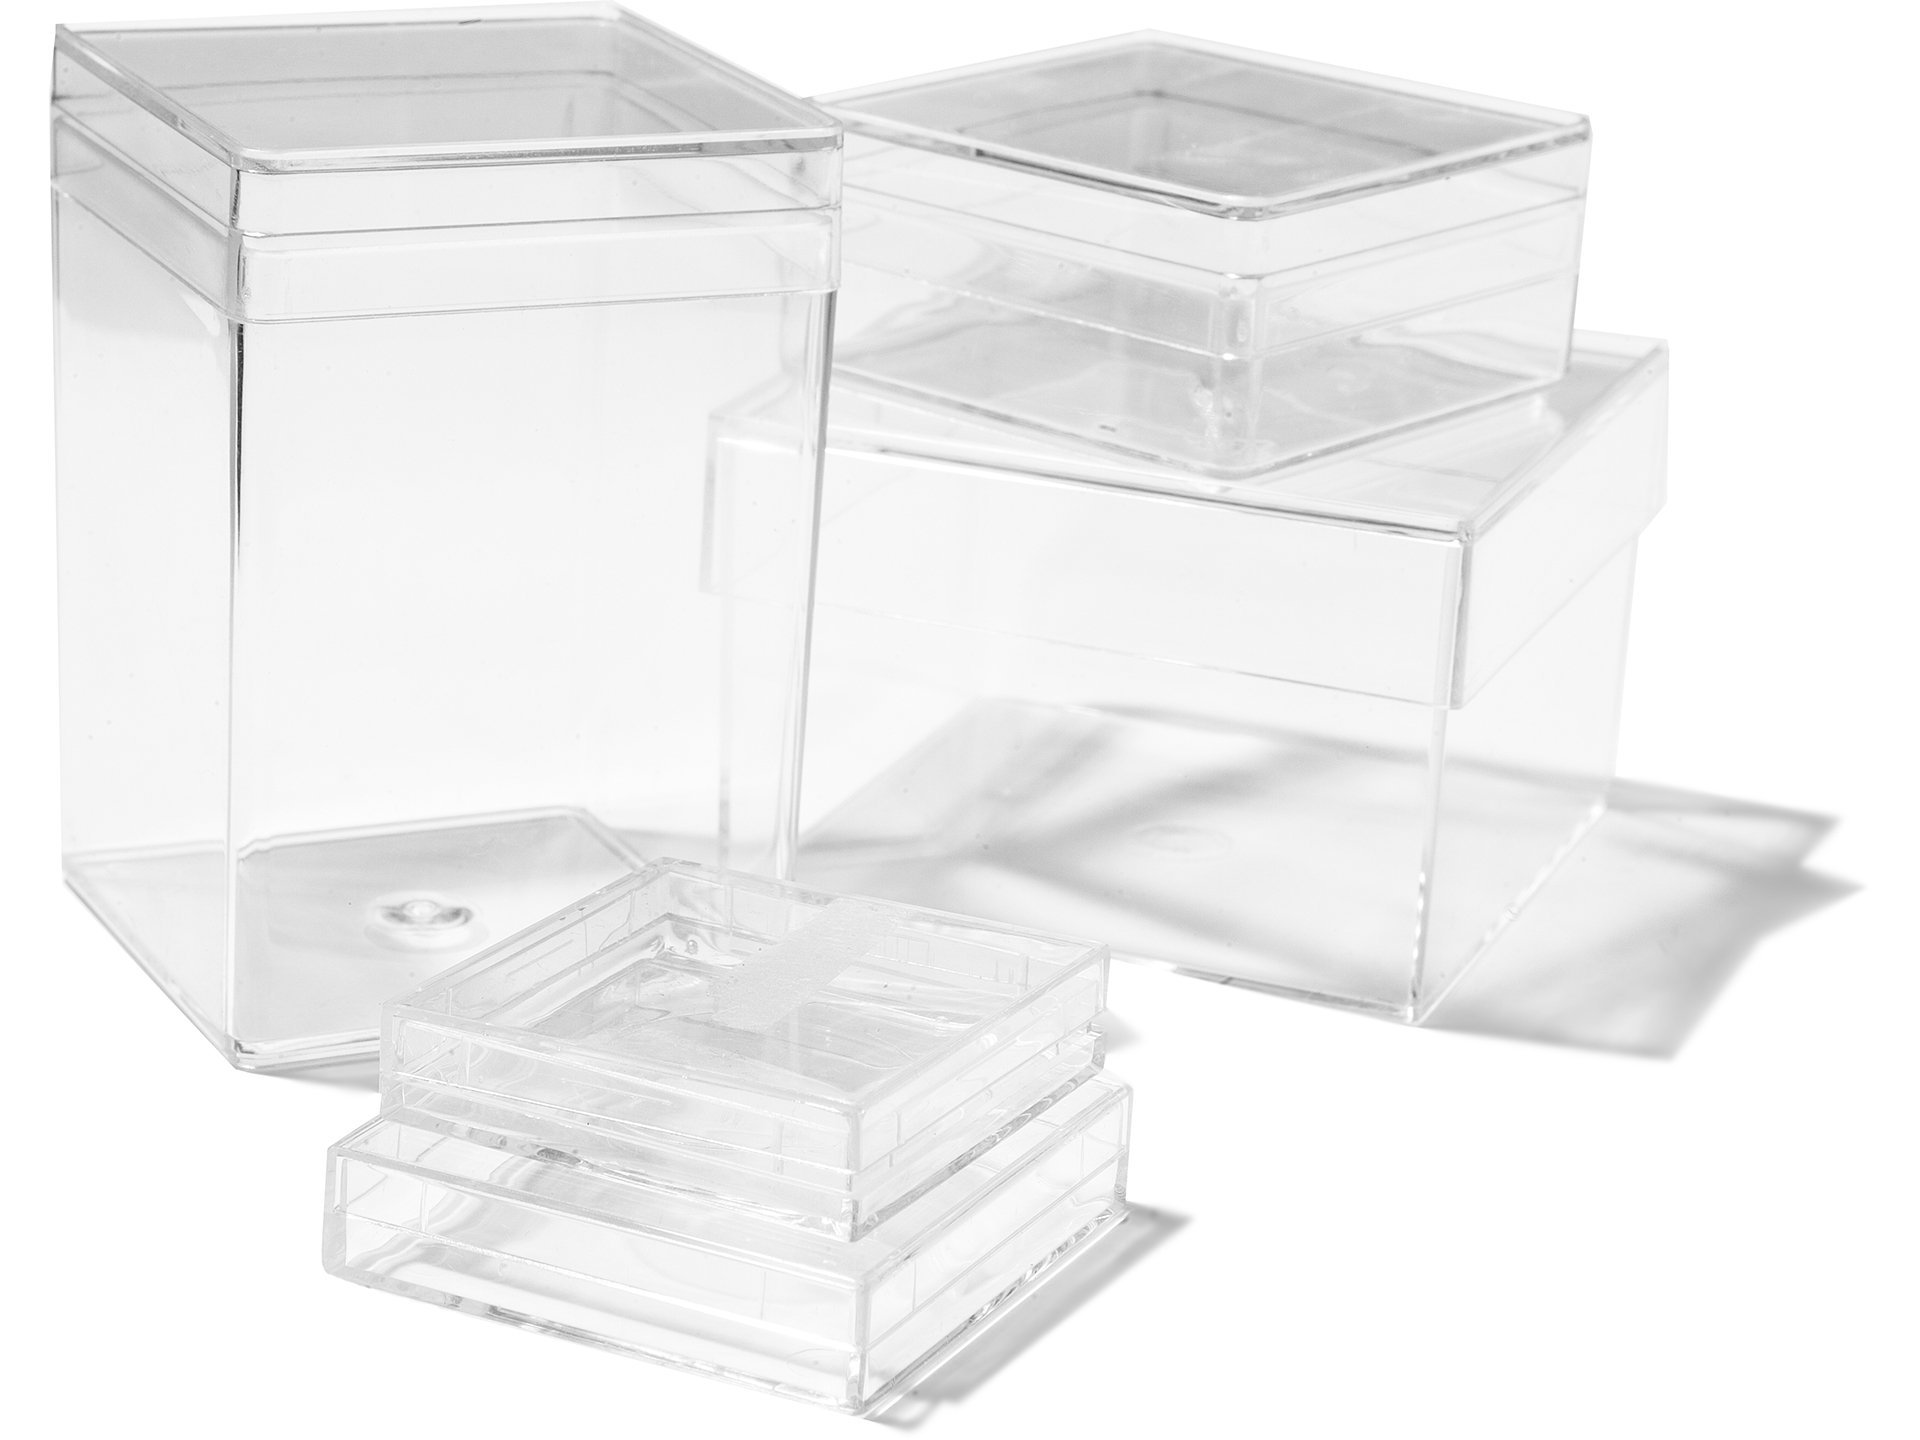 Acquistare Scatole di plastica trasparenti, quadrate online